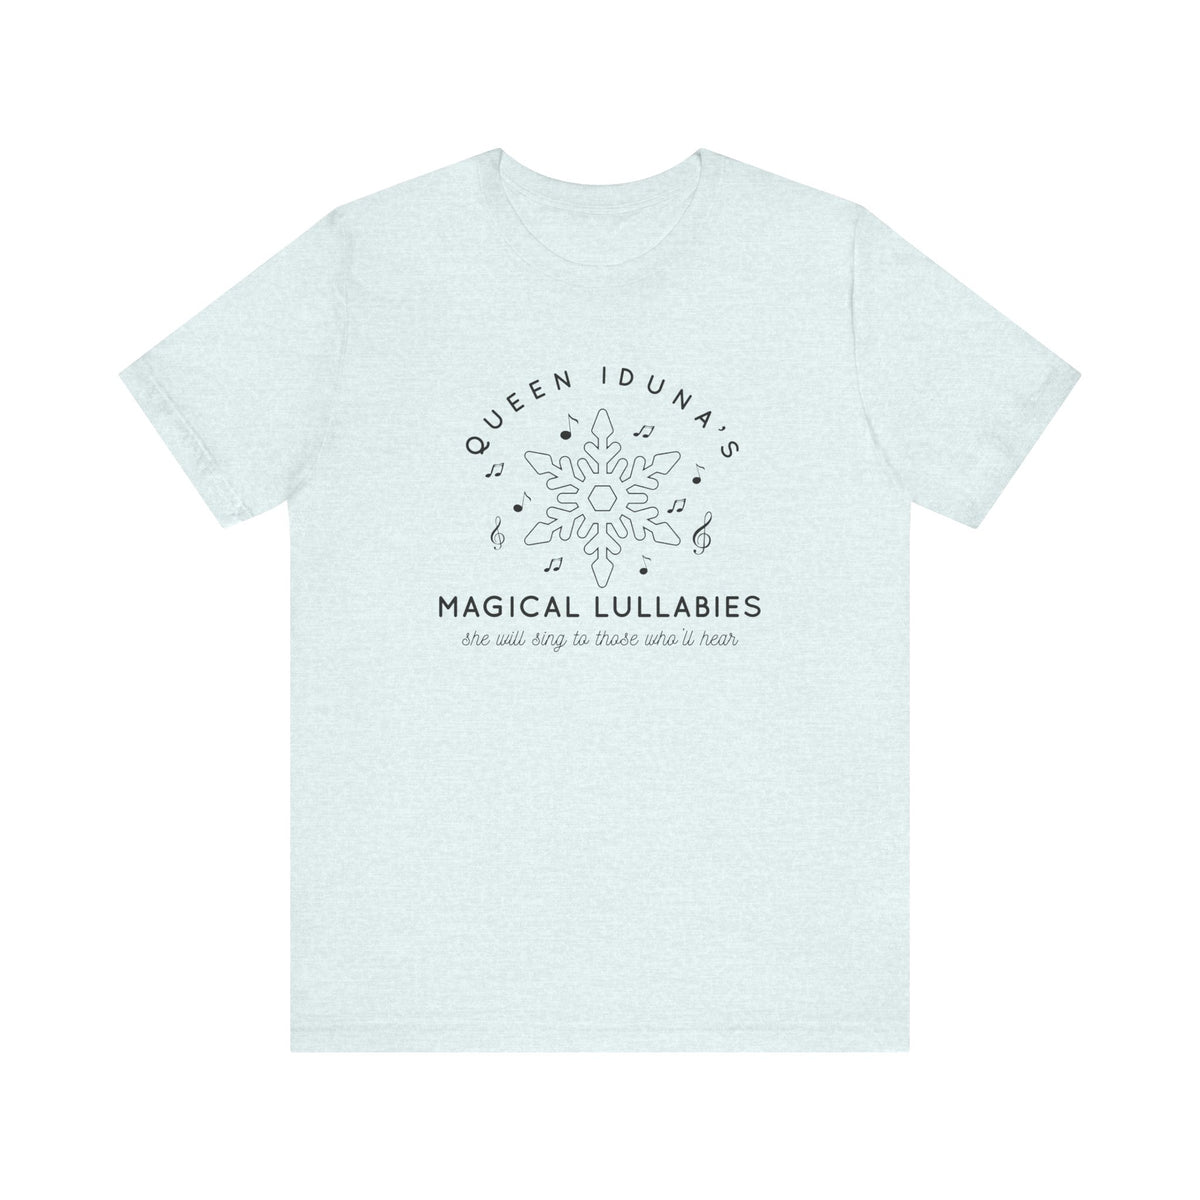 Queen Iduna's Magical Lullabies Bella Canvas Unisex Jersey Short Sleeve Tee